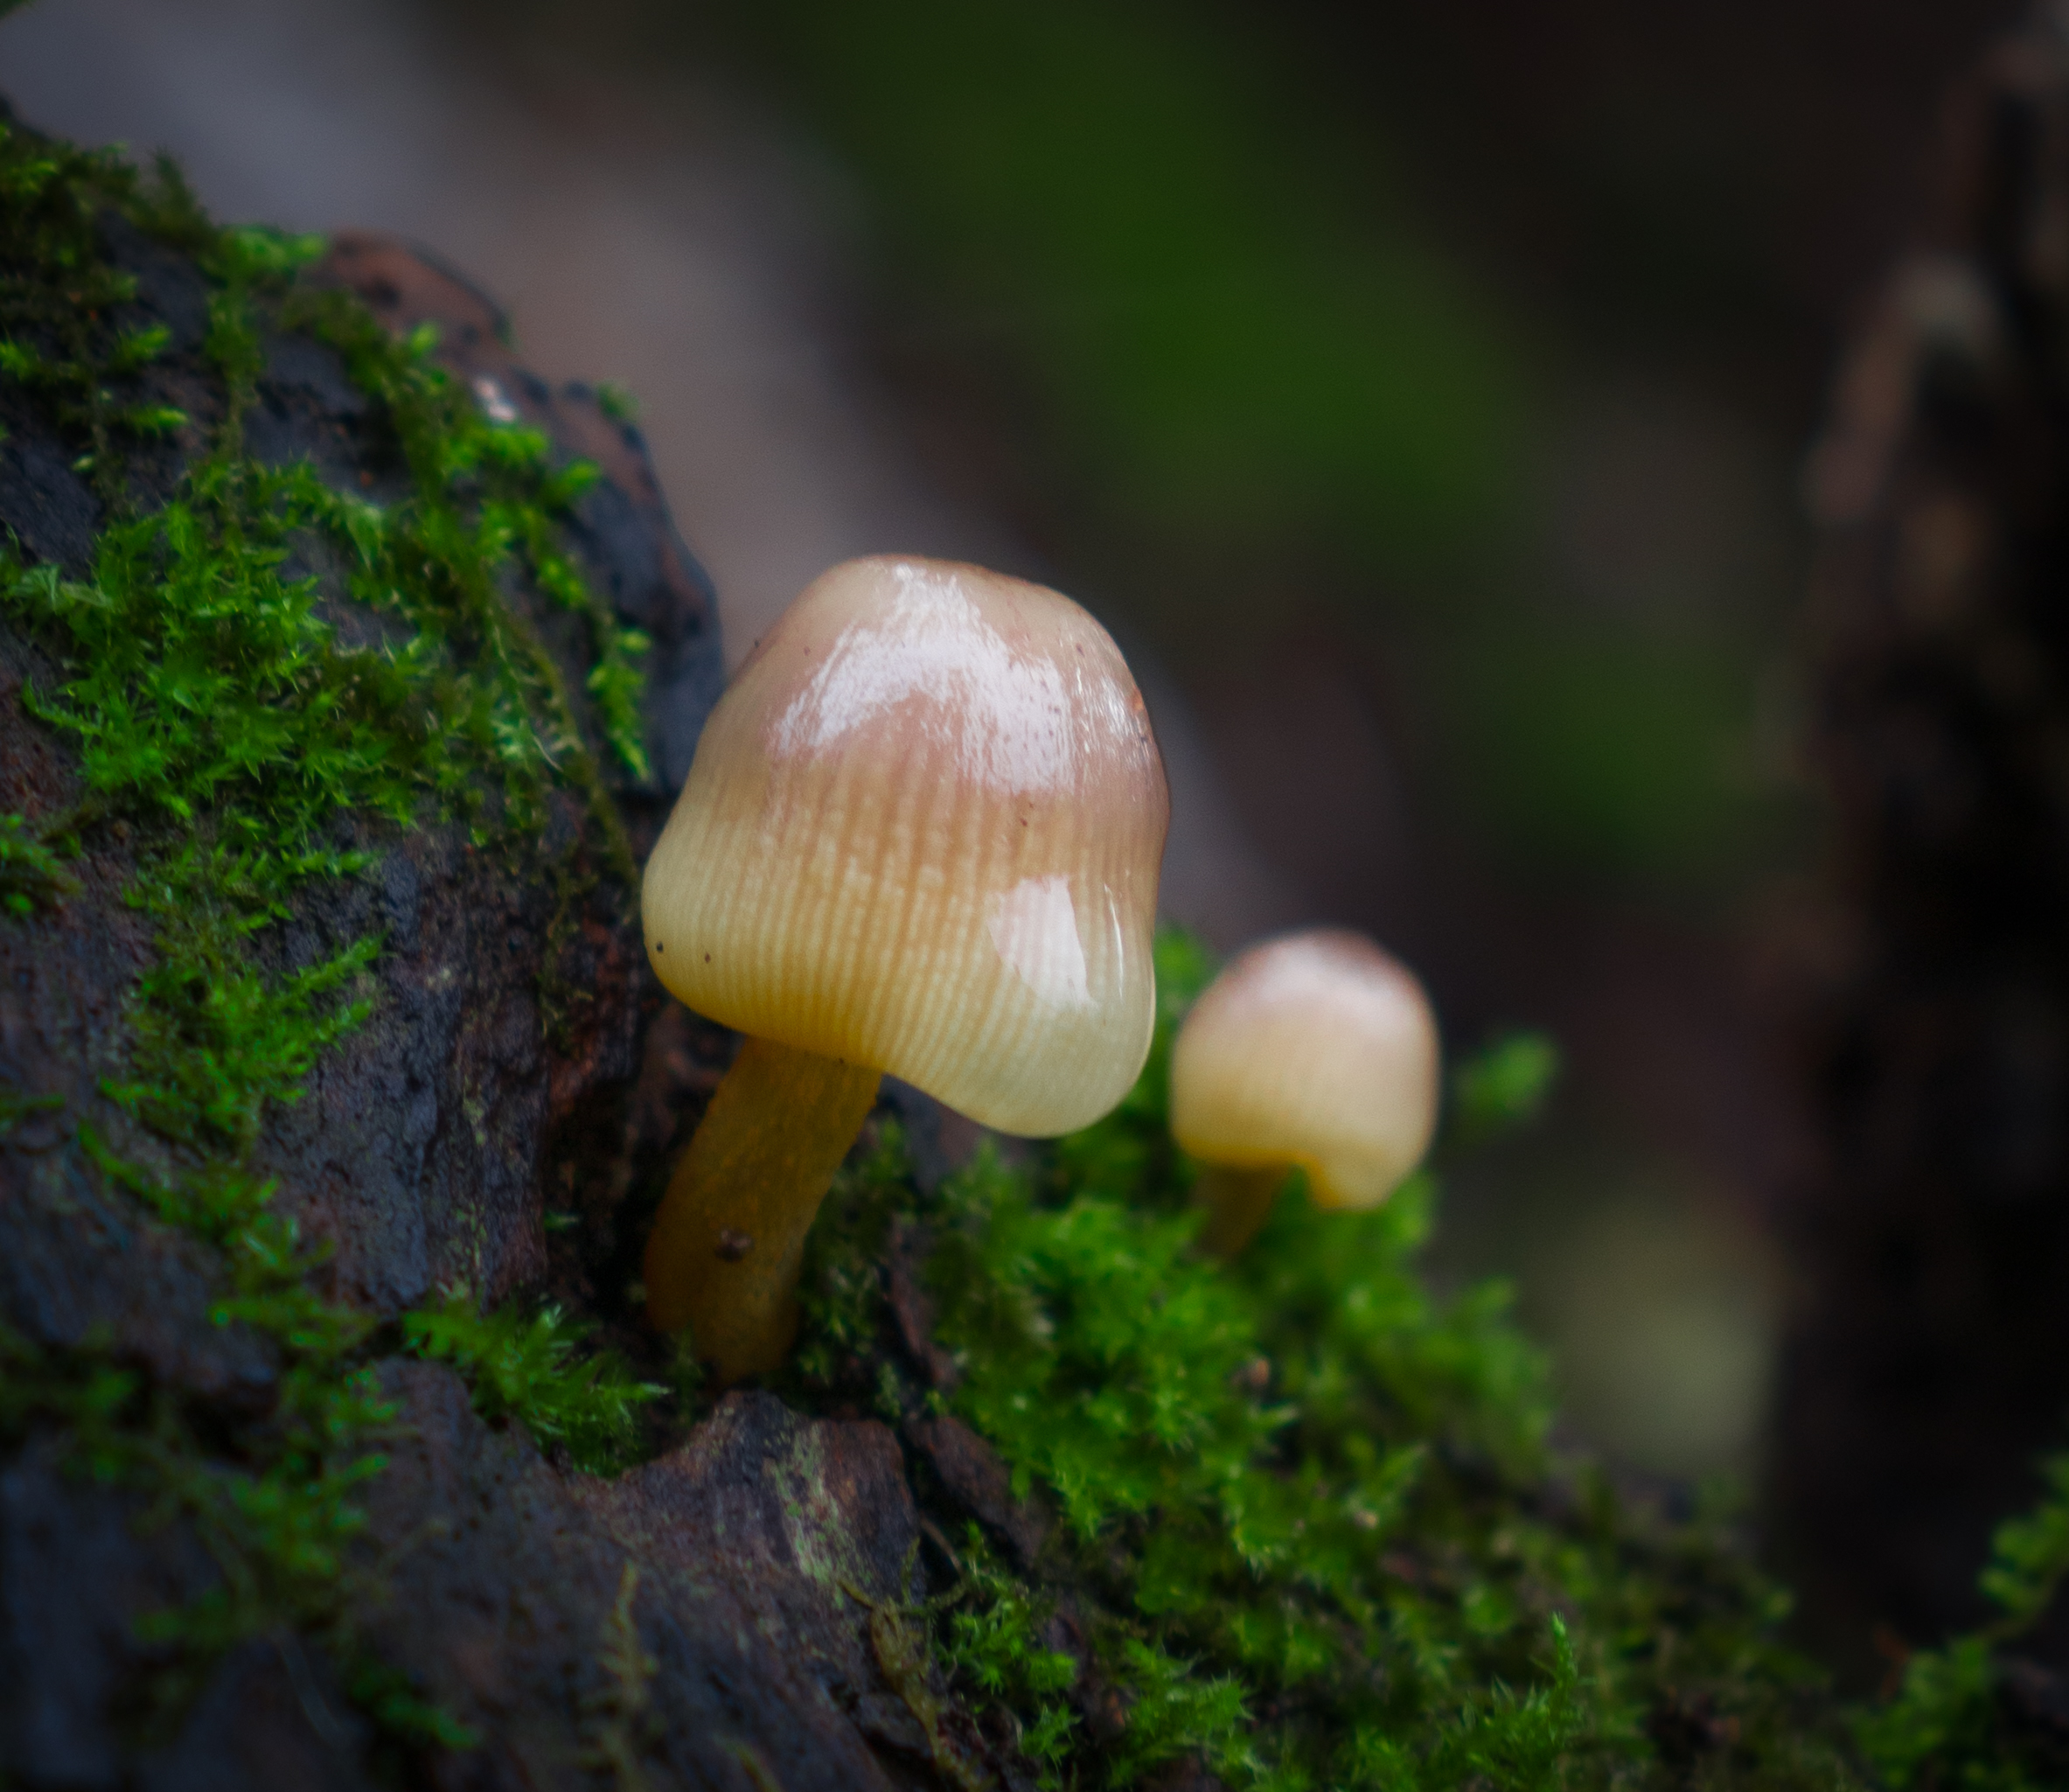 Moisture on mushroom